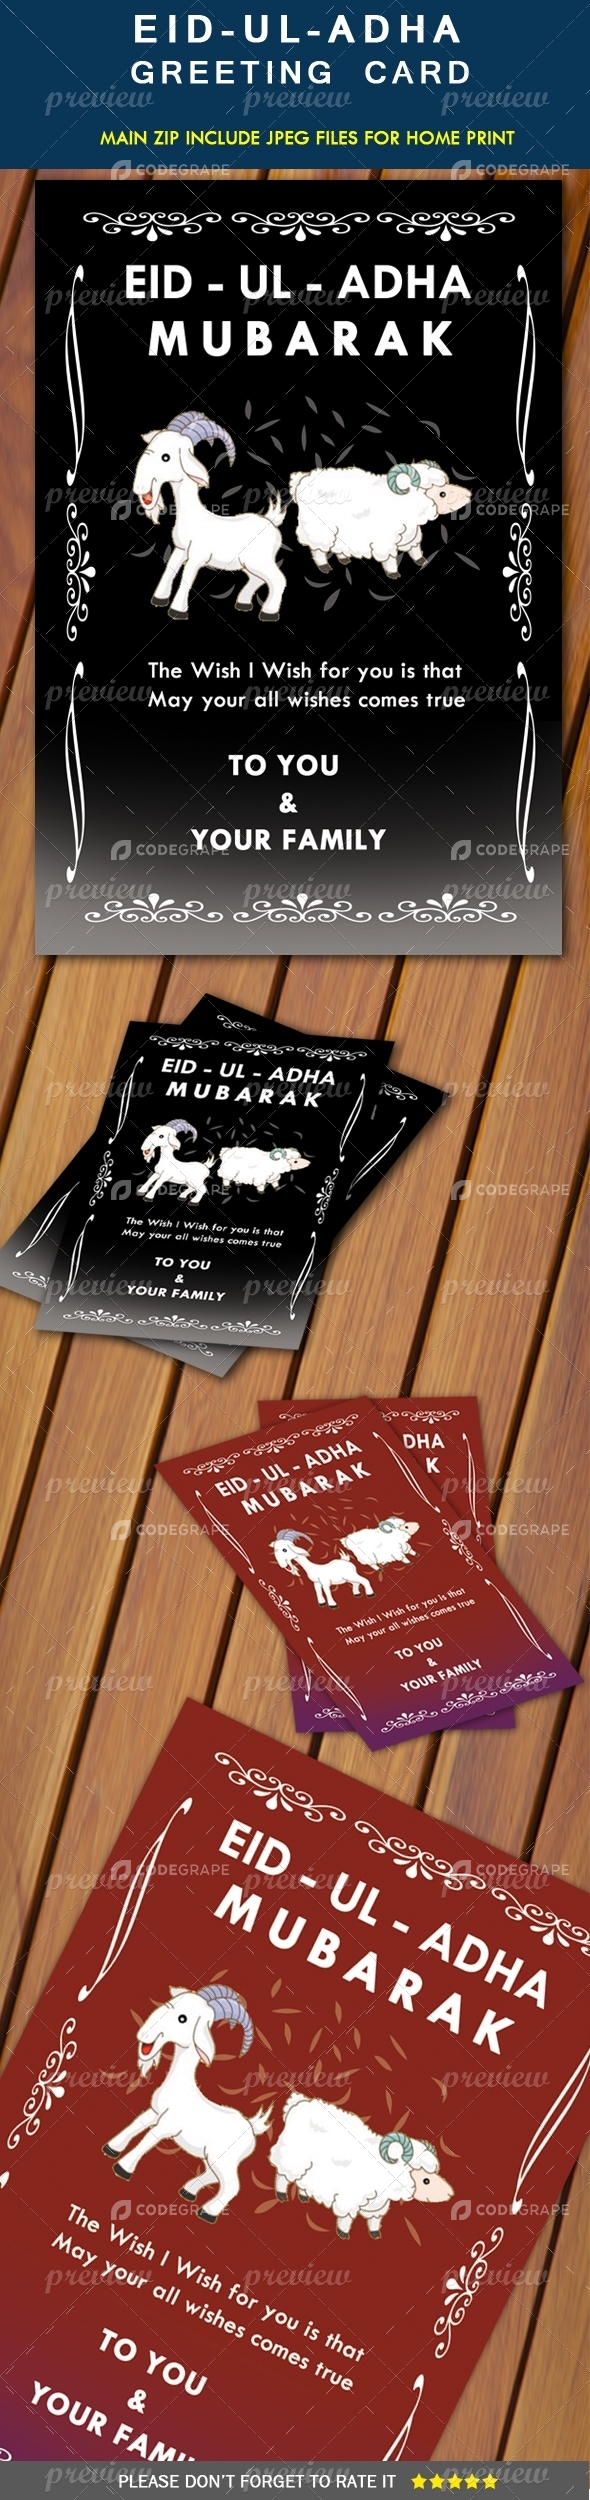 Eid-Ul-Adha Greeting Card